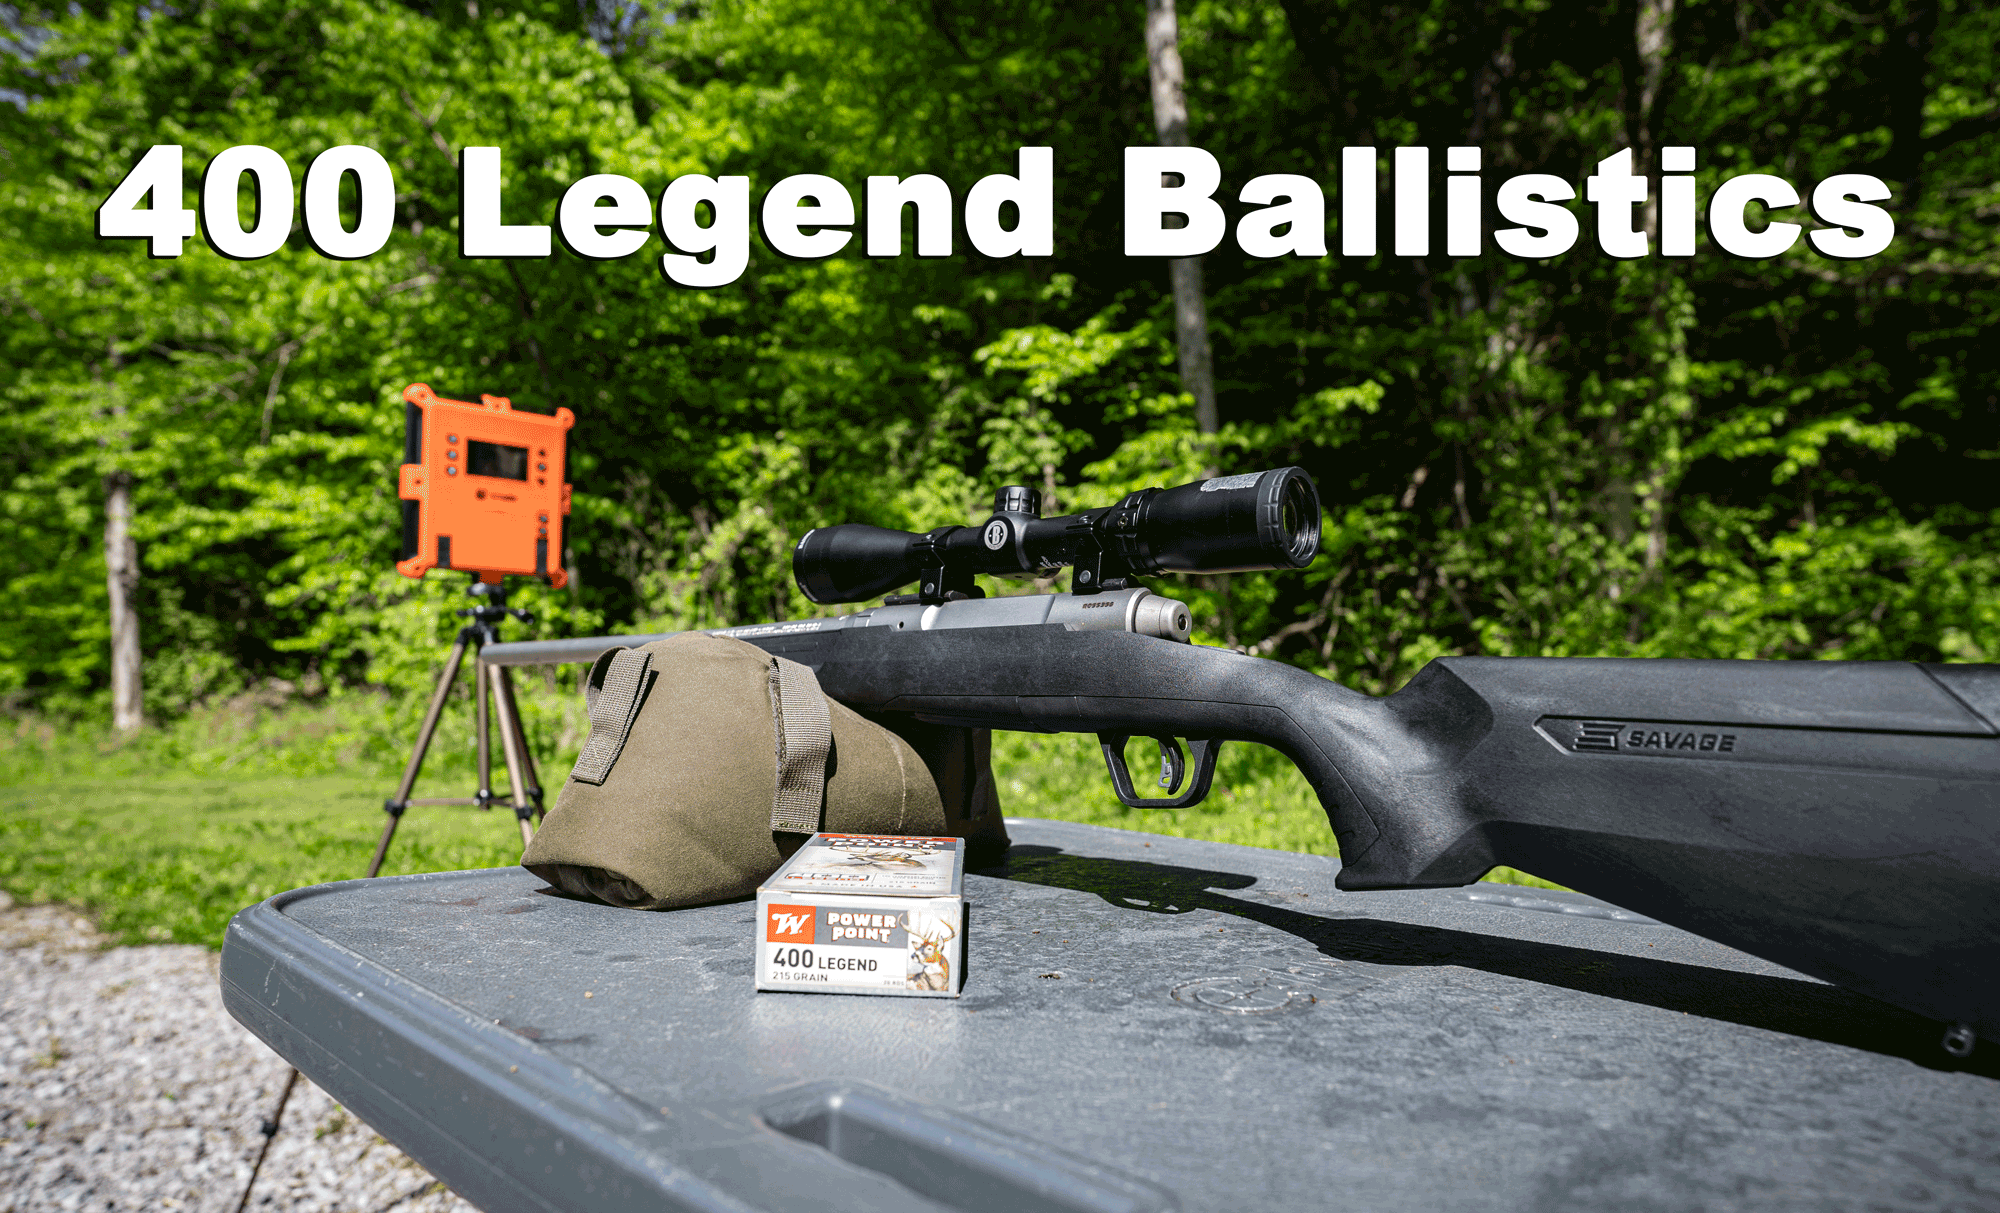 400 legend ballistics